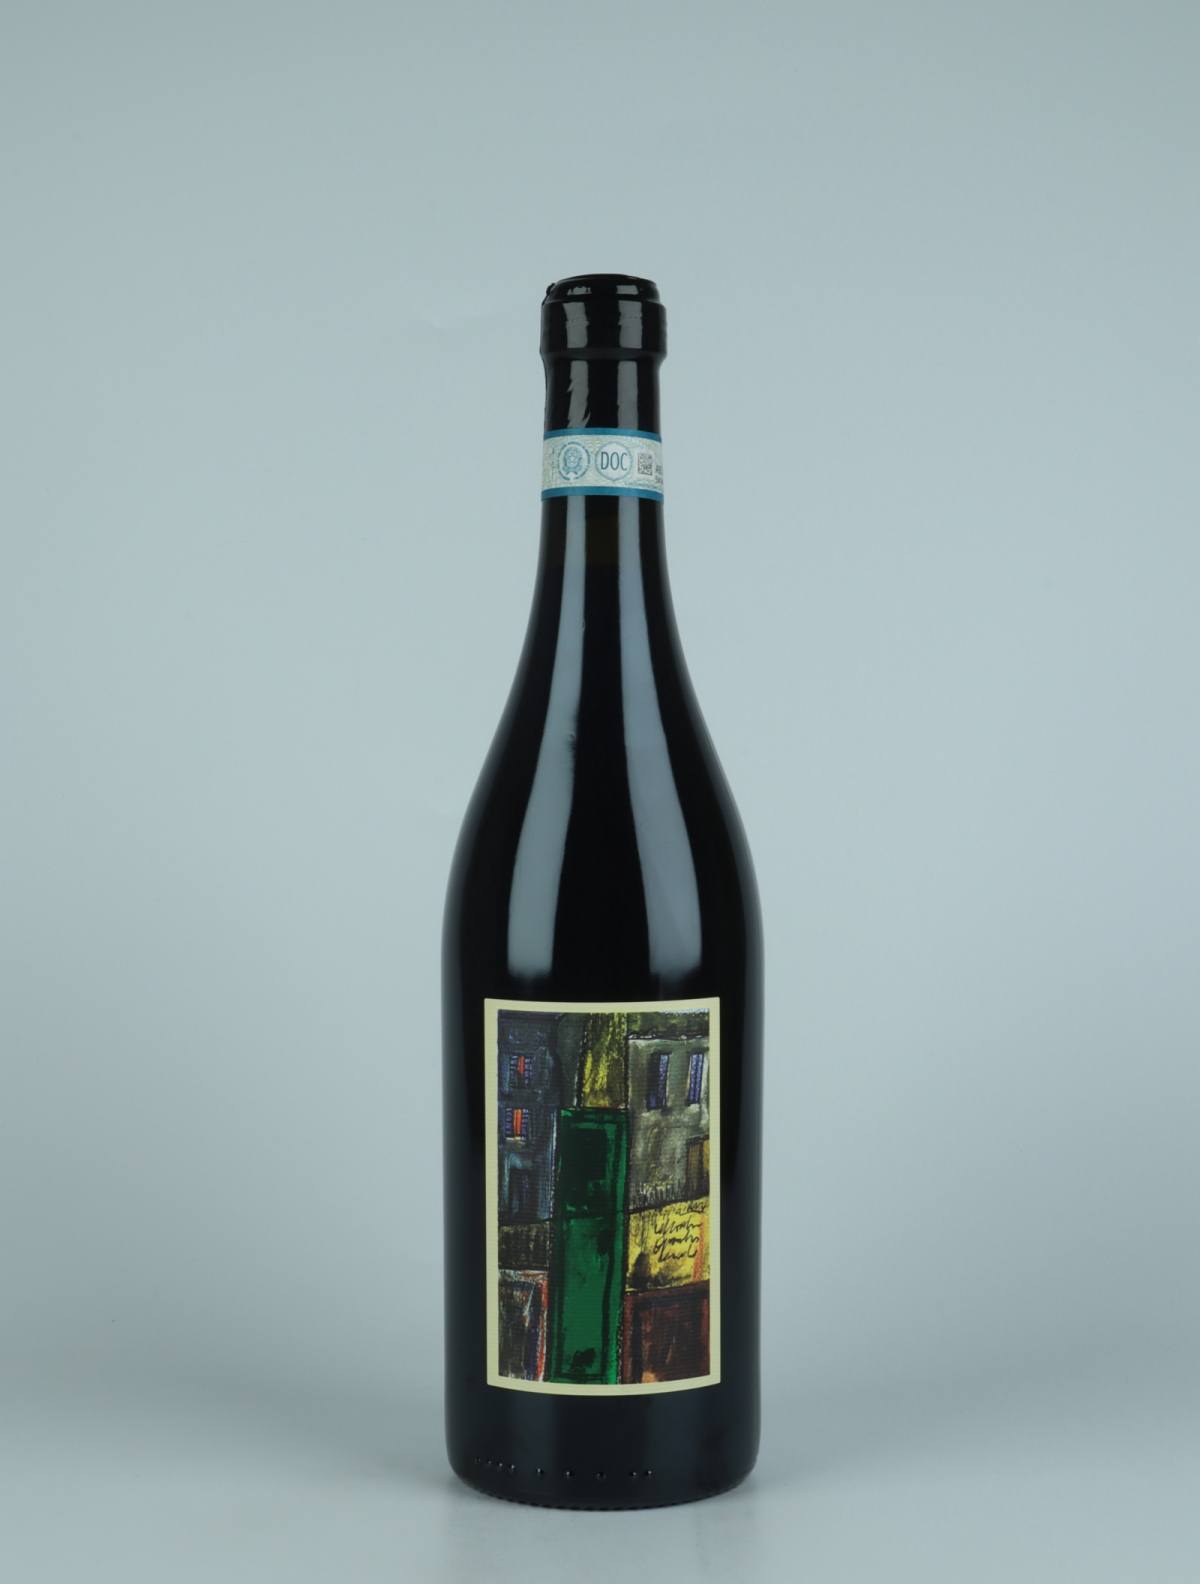 A bottle 2020 Monferrato Nebbiolo - Il Clown Red wine from Andrea Scovero, Piedmont in Italy